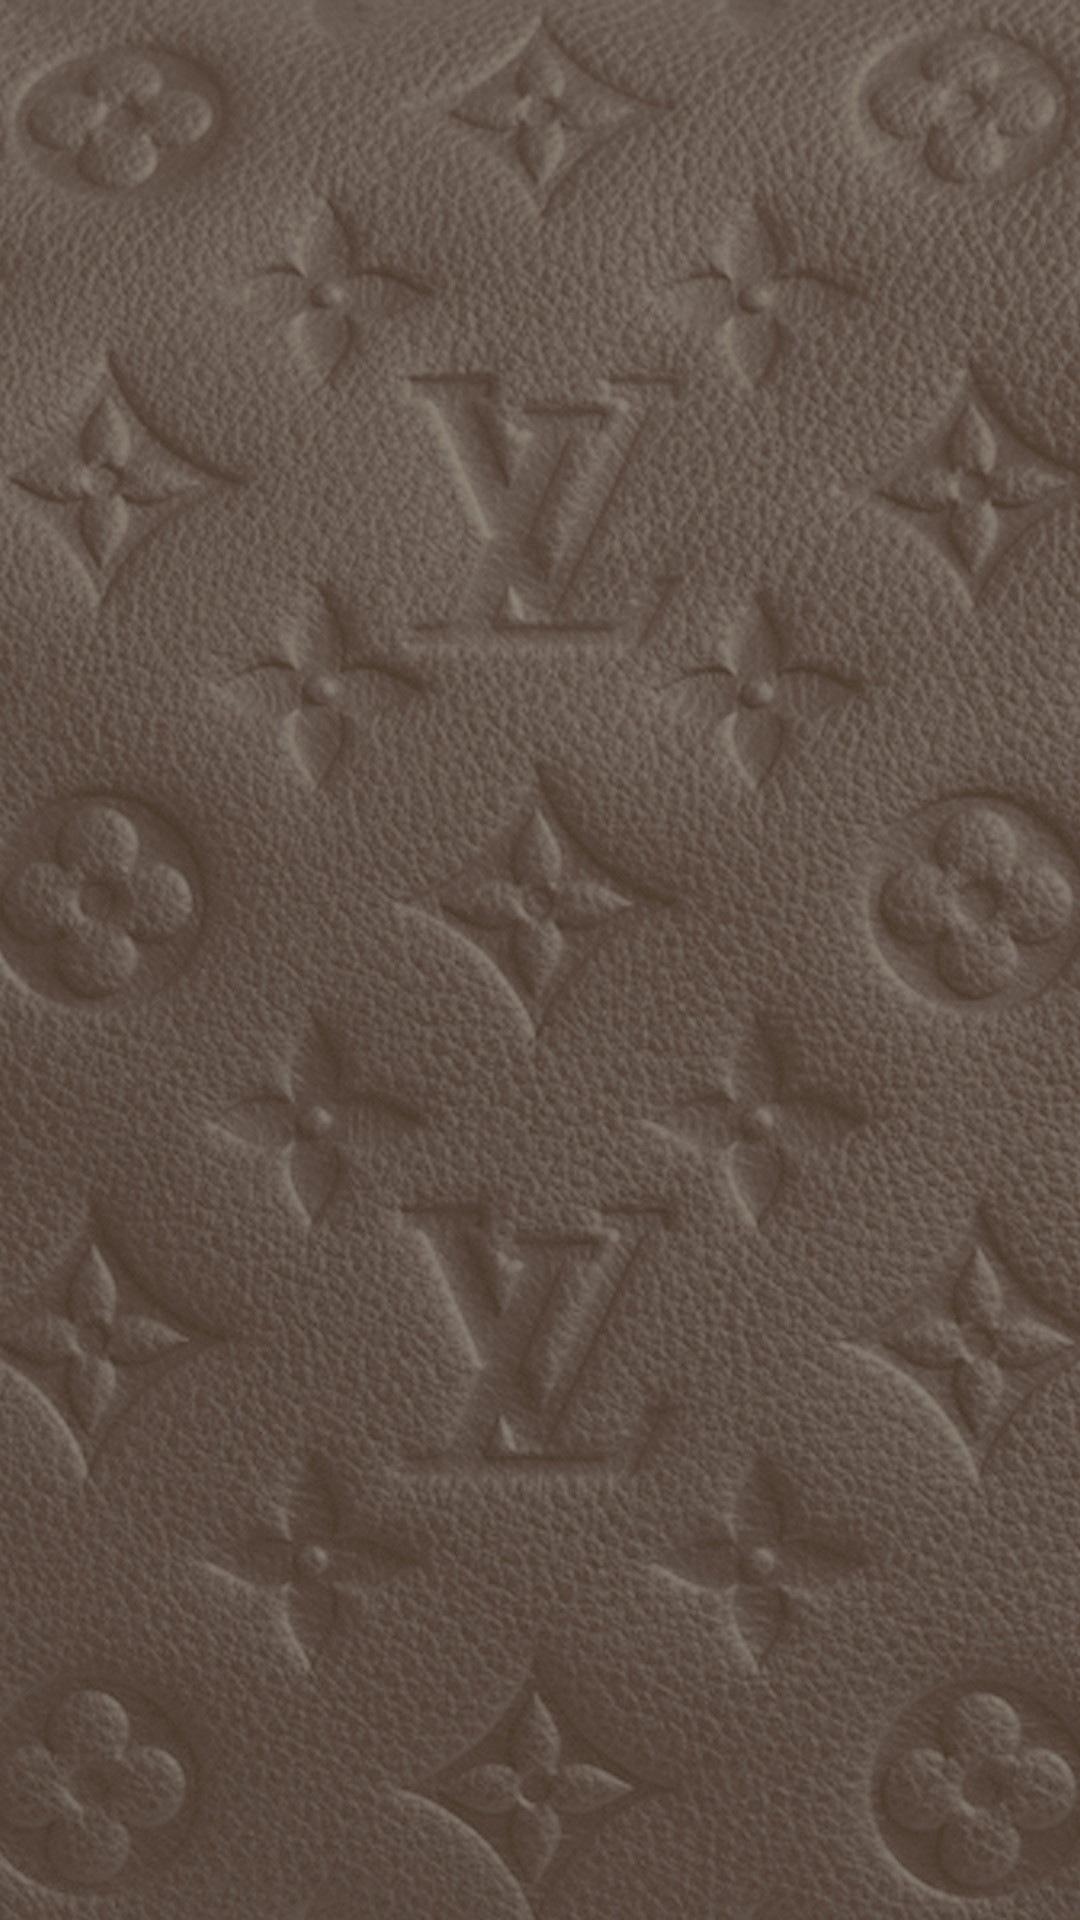 Lv Monogram Empreinte Ombre Hd Wallpaper Iphone 6 Plus - Papel De Parede Louis  Vuitton - 1080x1920 Wallpaper 